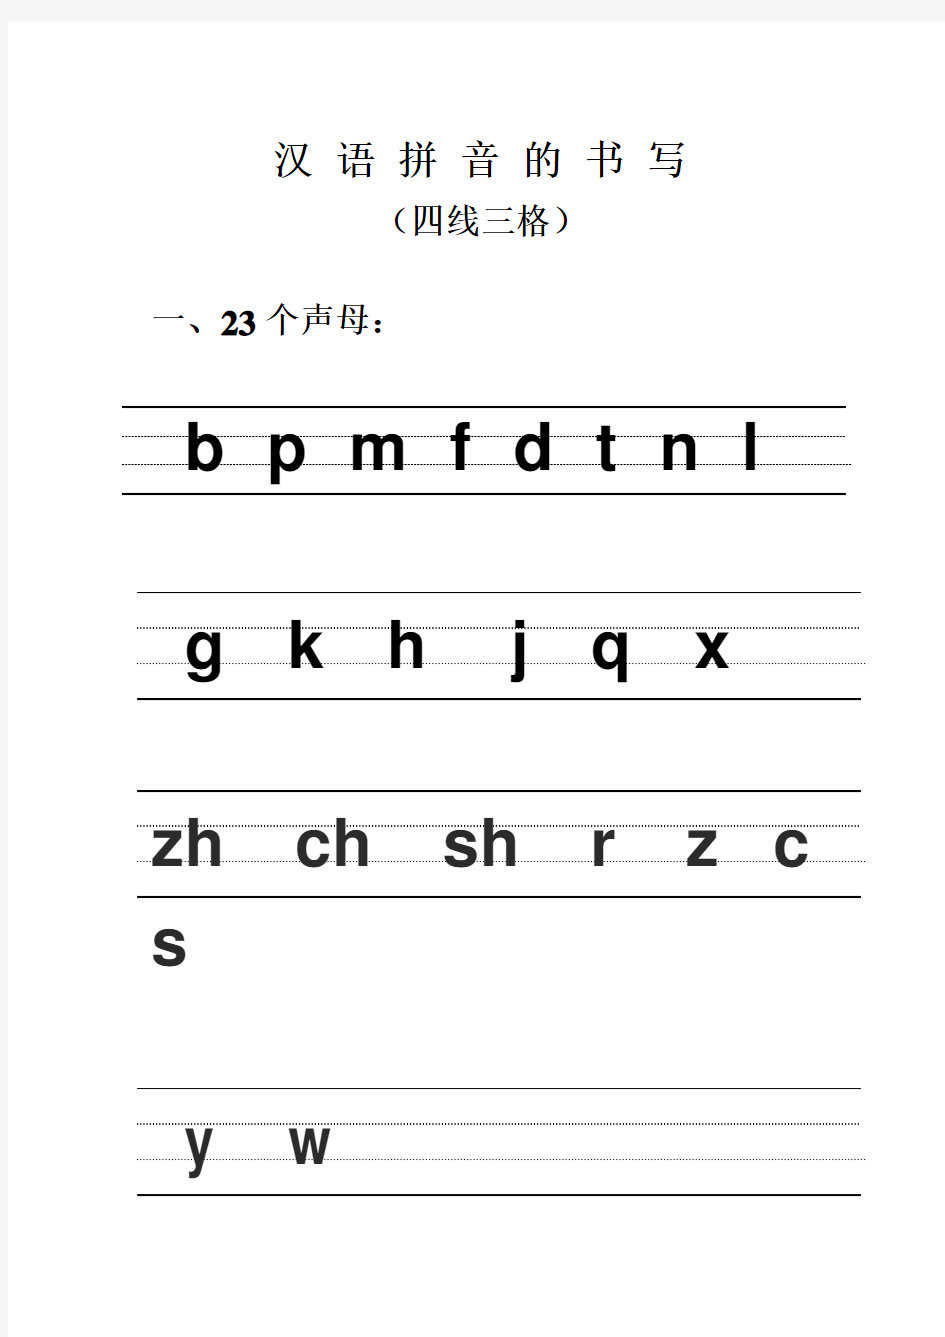 汉语拼音的书写格式(四线三格)